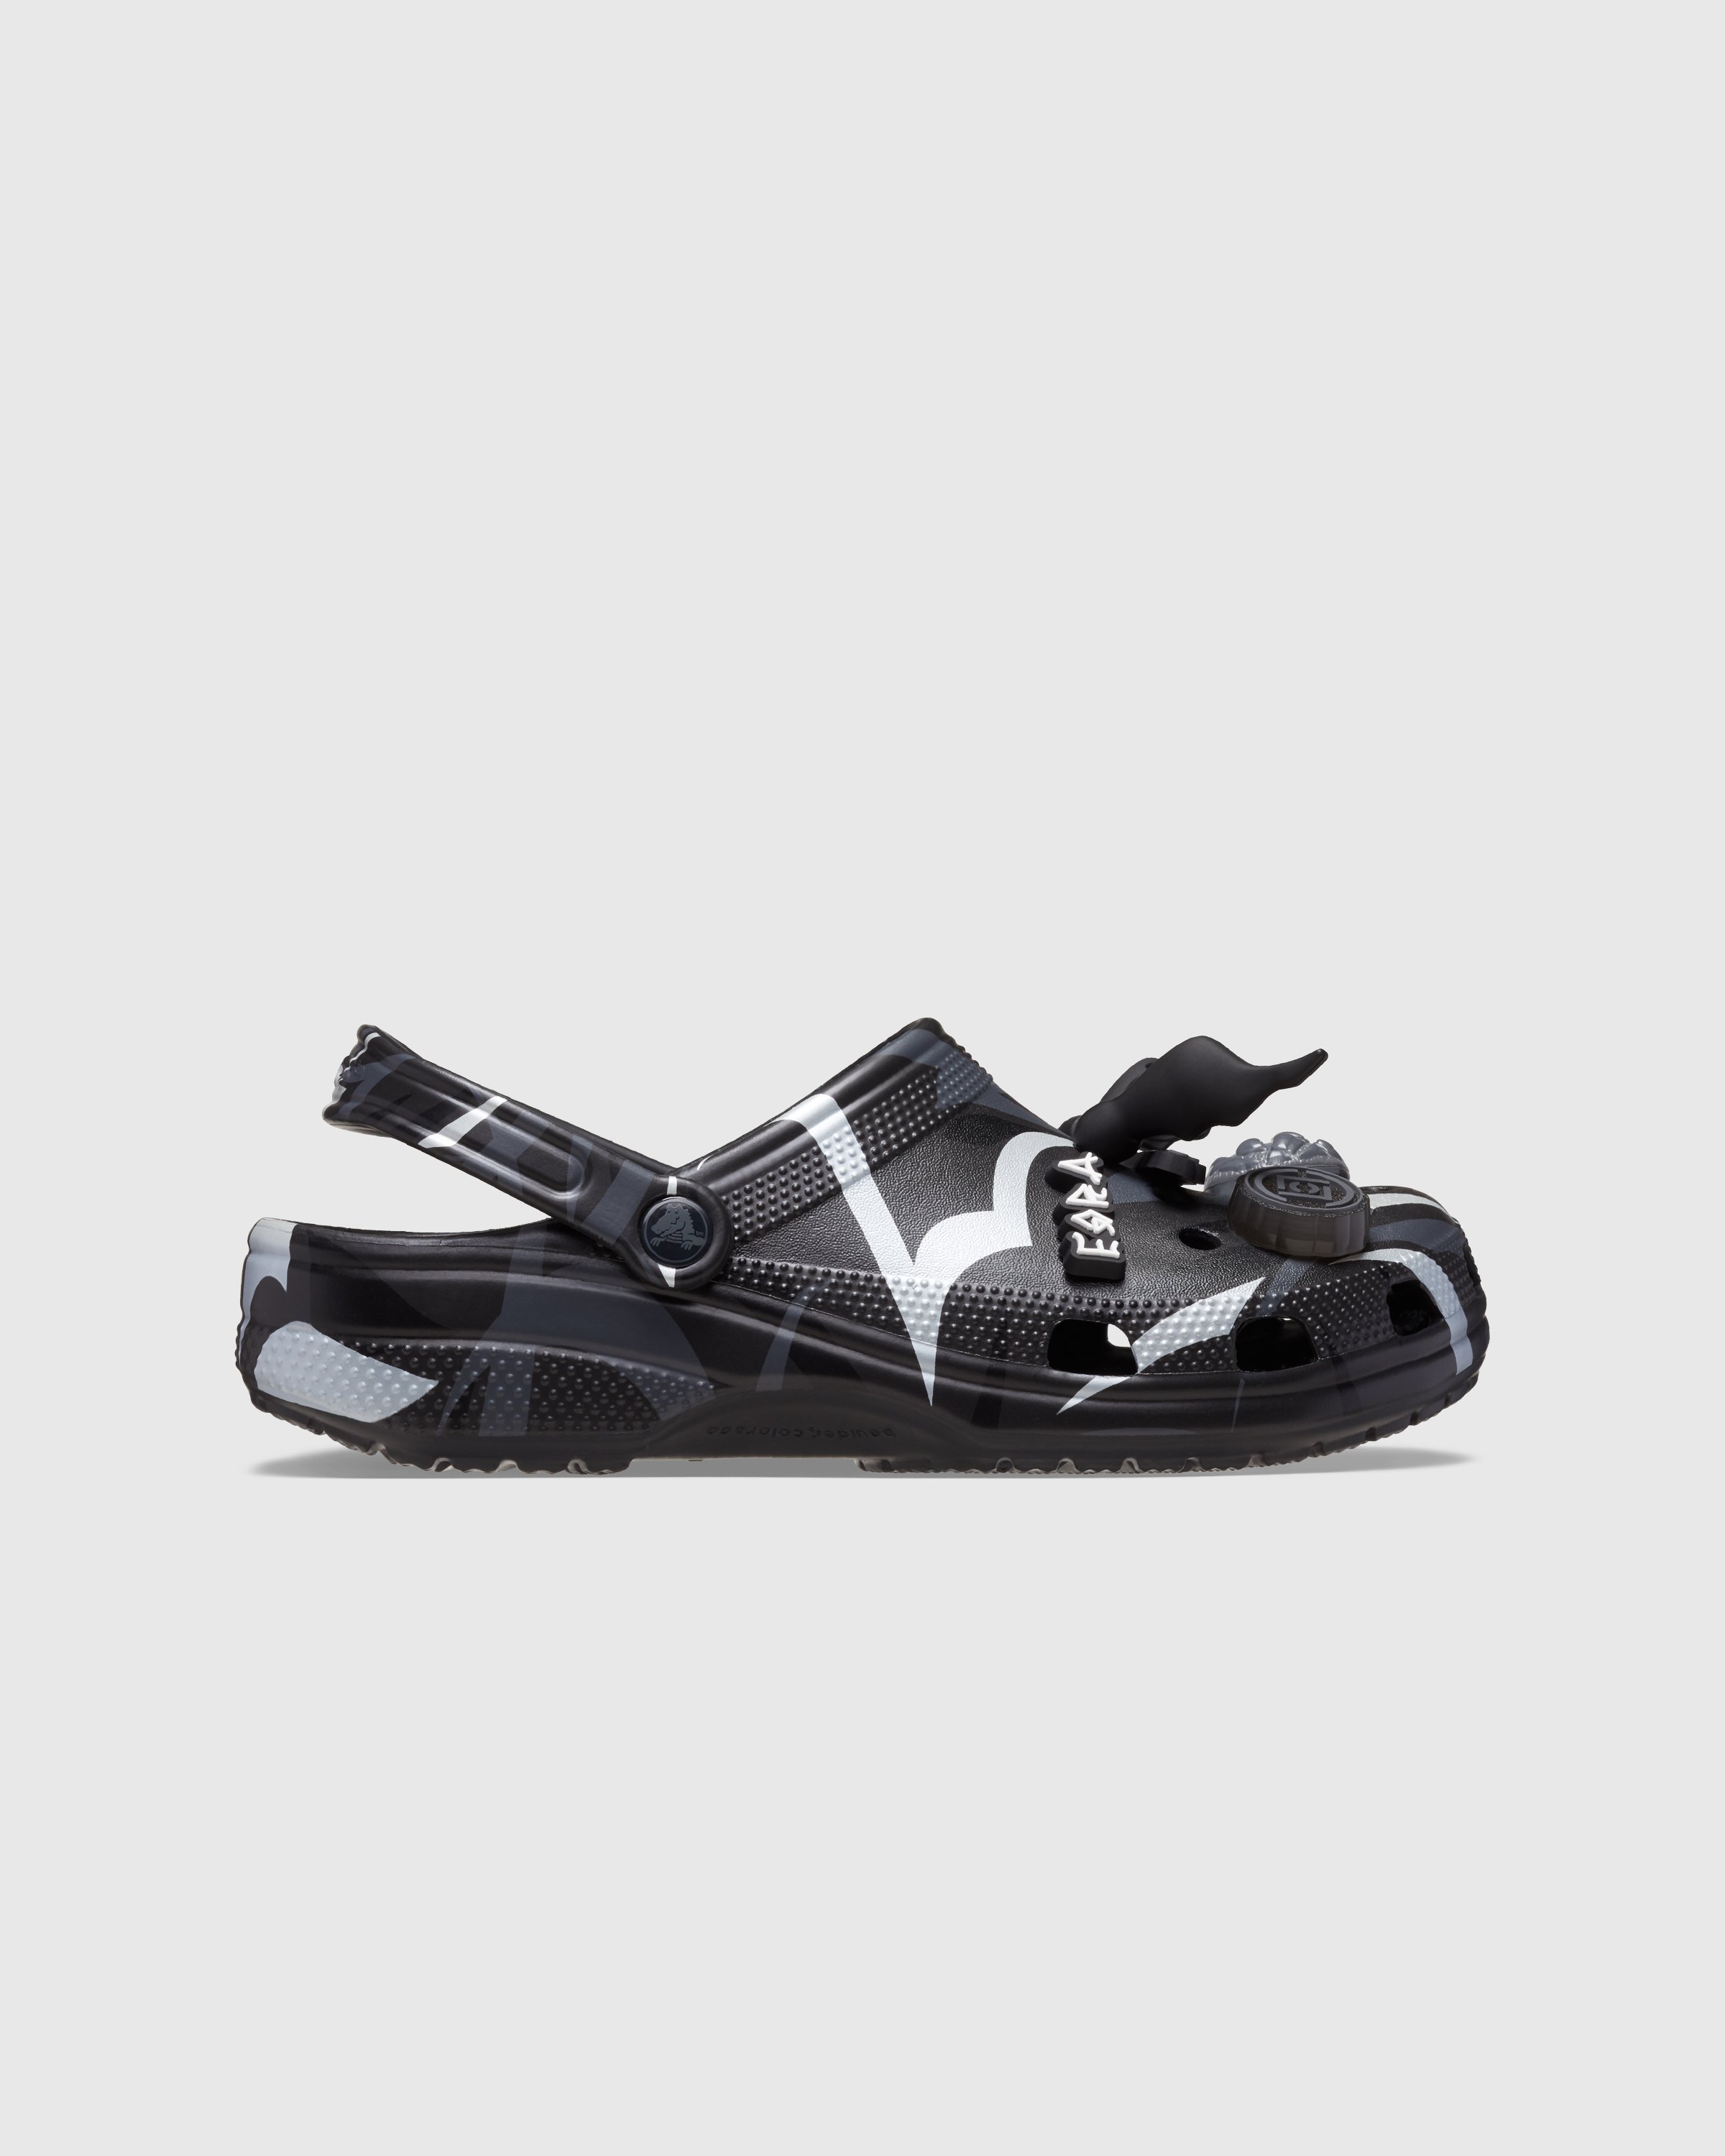 CLOT x Crocs - Classic Clog Black - Footwear - Black - Image 1